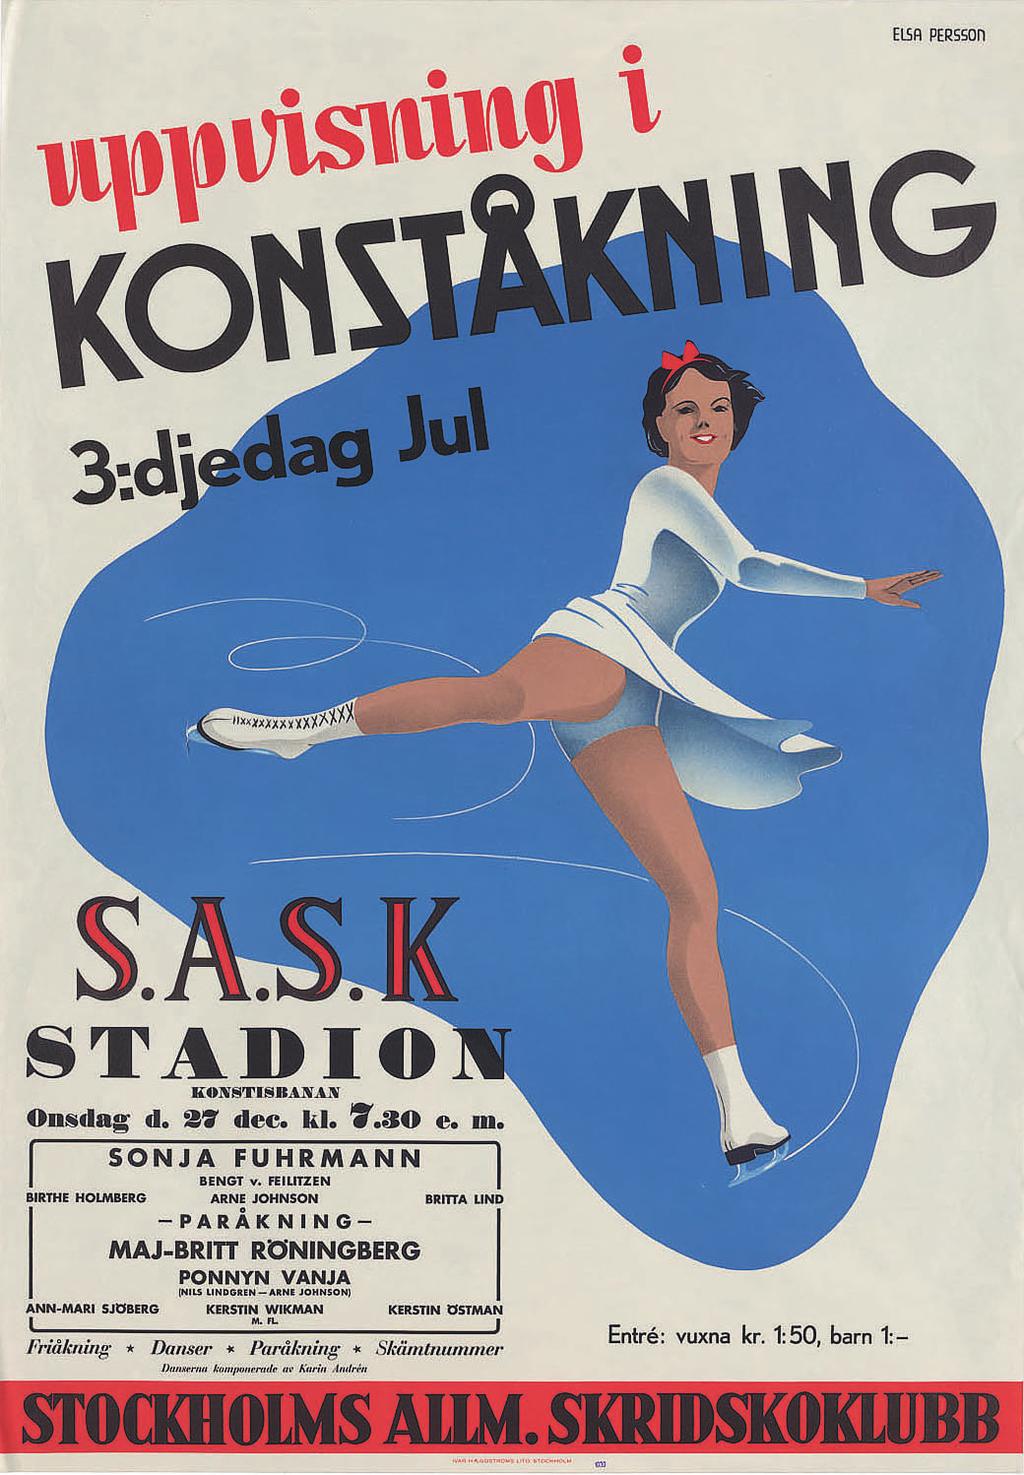 Uppvisning i konståkning, affisch från 1940-tal. Foto: Björn Green, Kungliga biblioteket 2. Tidningar Den första svenska idrottstidningen, Tidning för idrott, startades 1881.